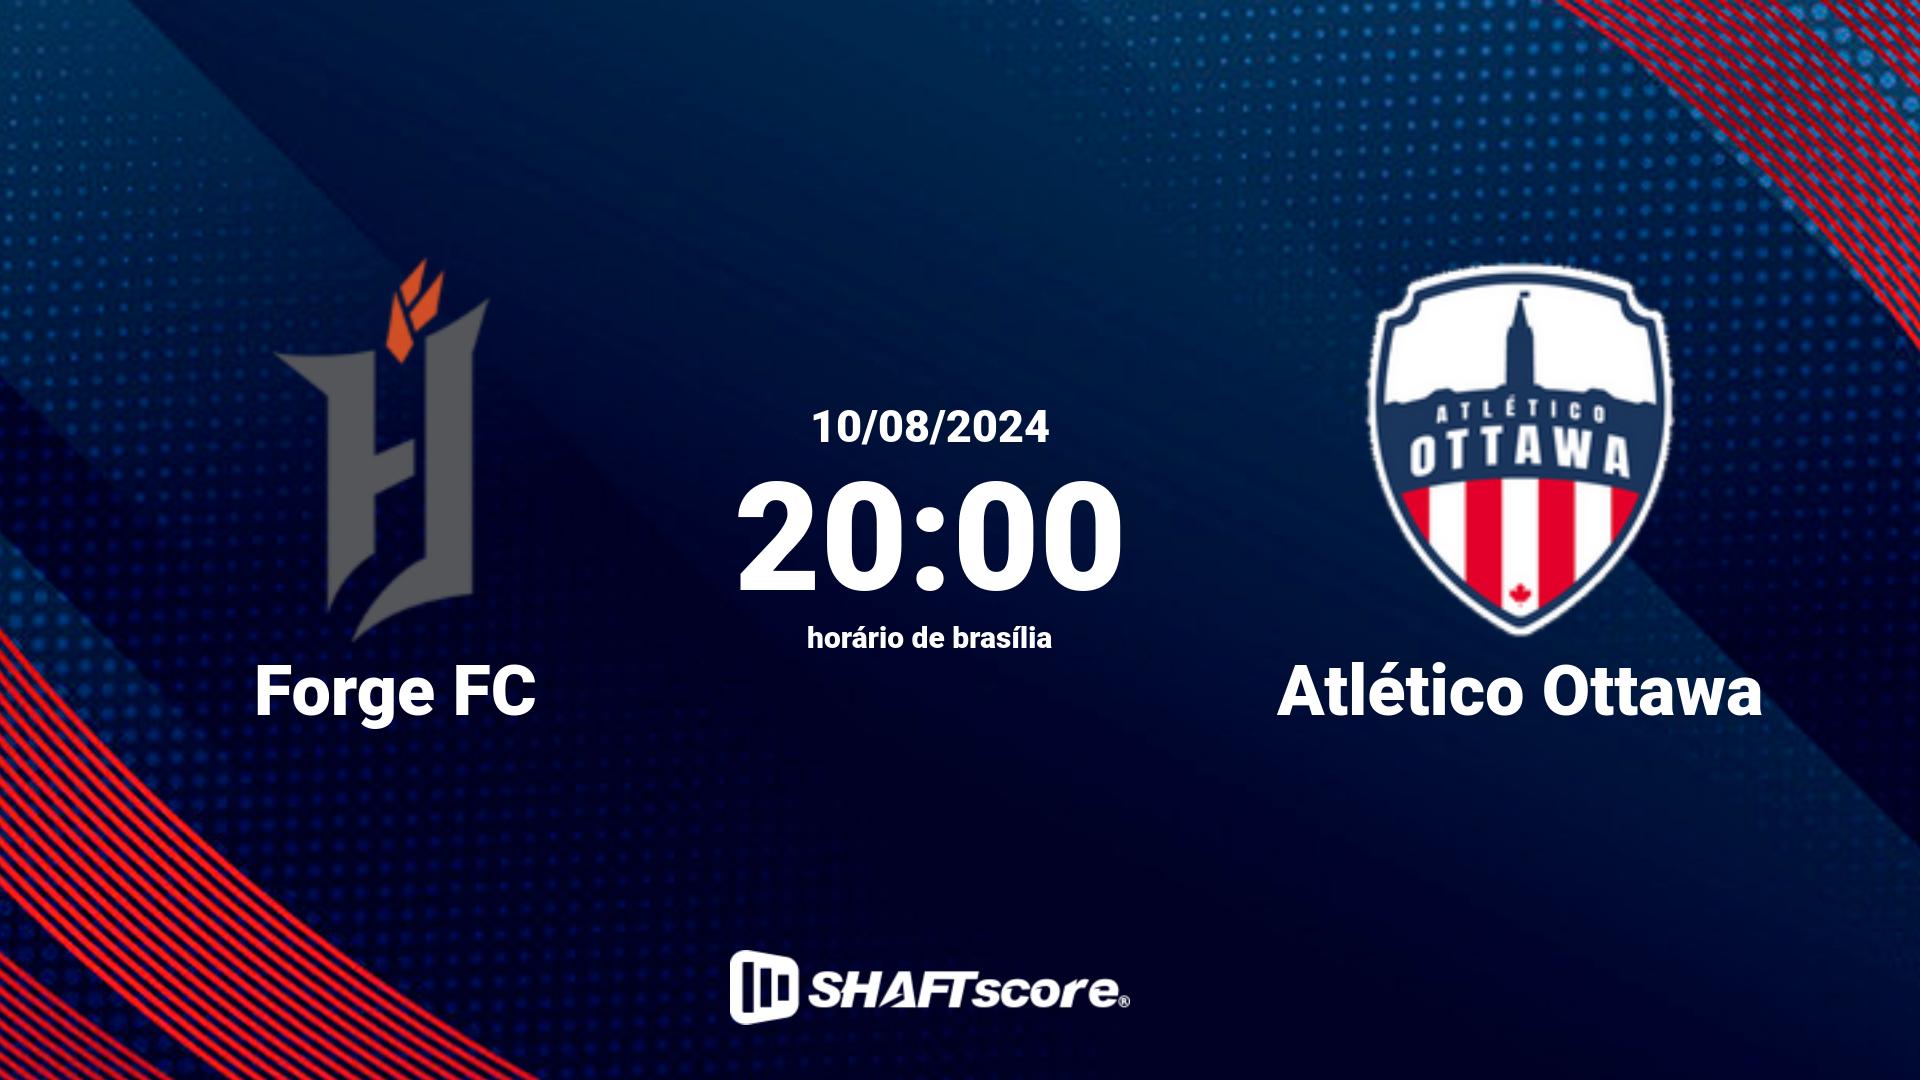 Estatísticas do jogo Forge FC vs Atlético Ottawa 10.08 20:00